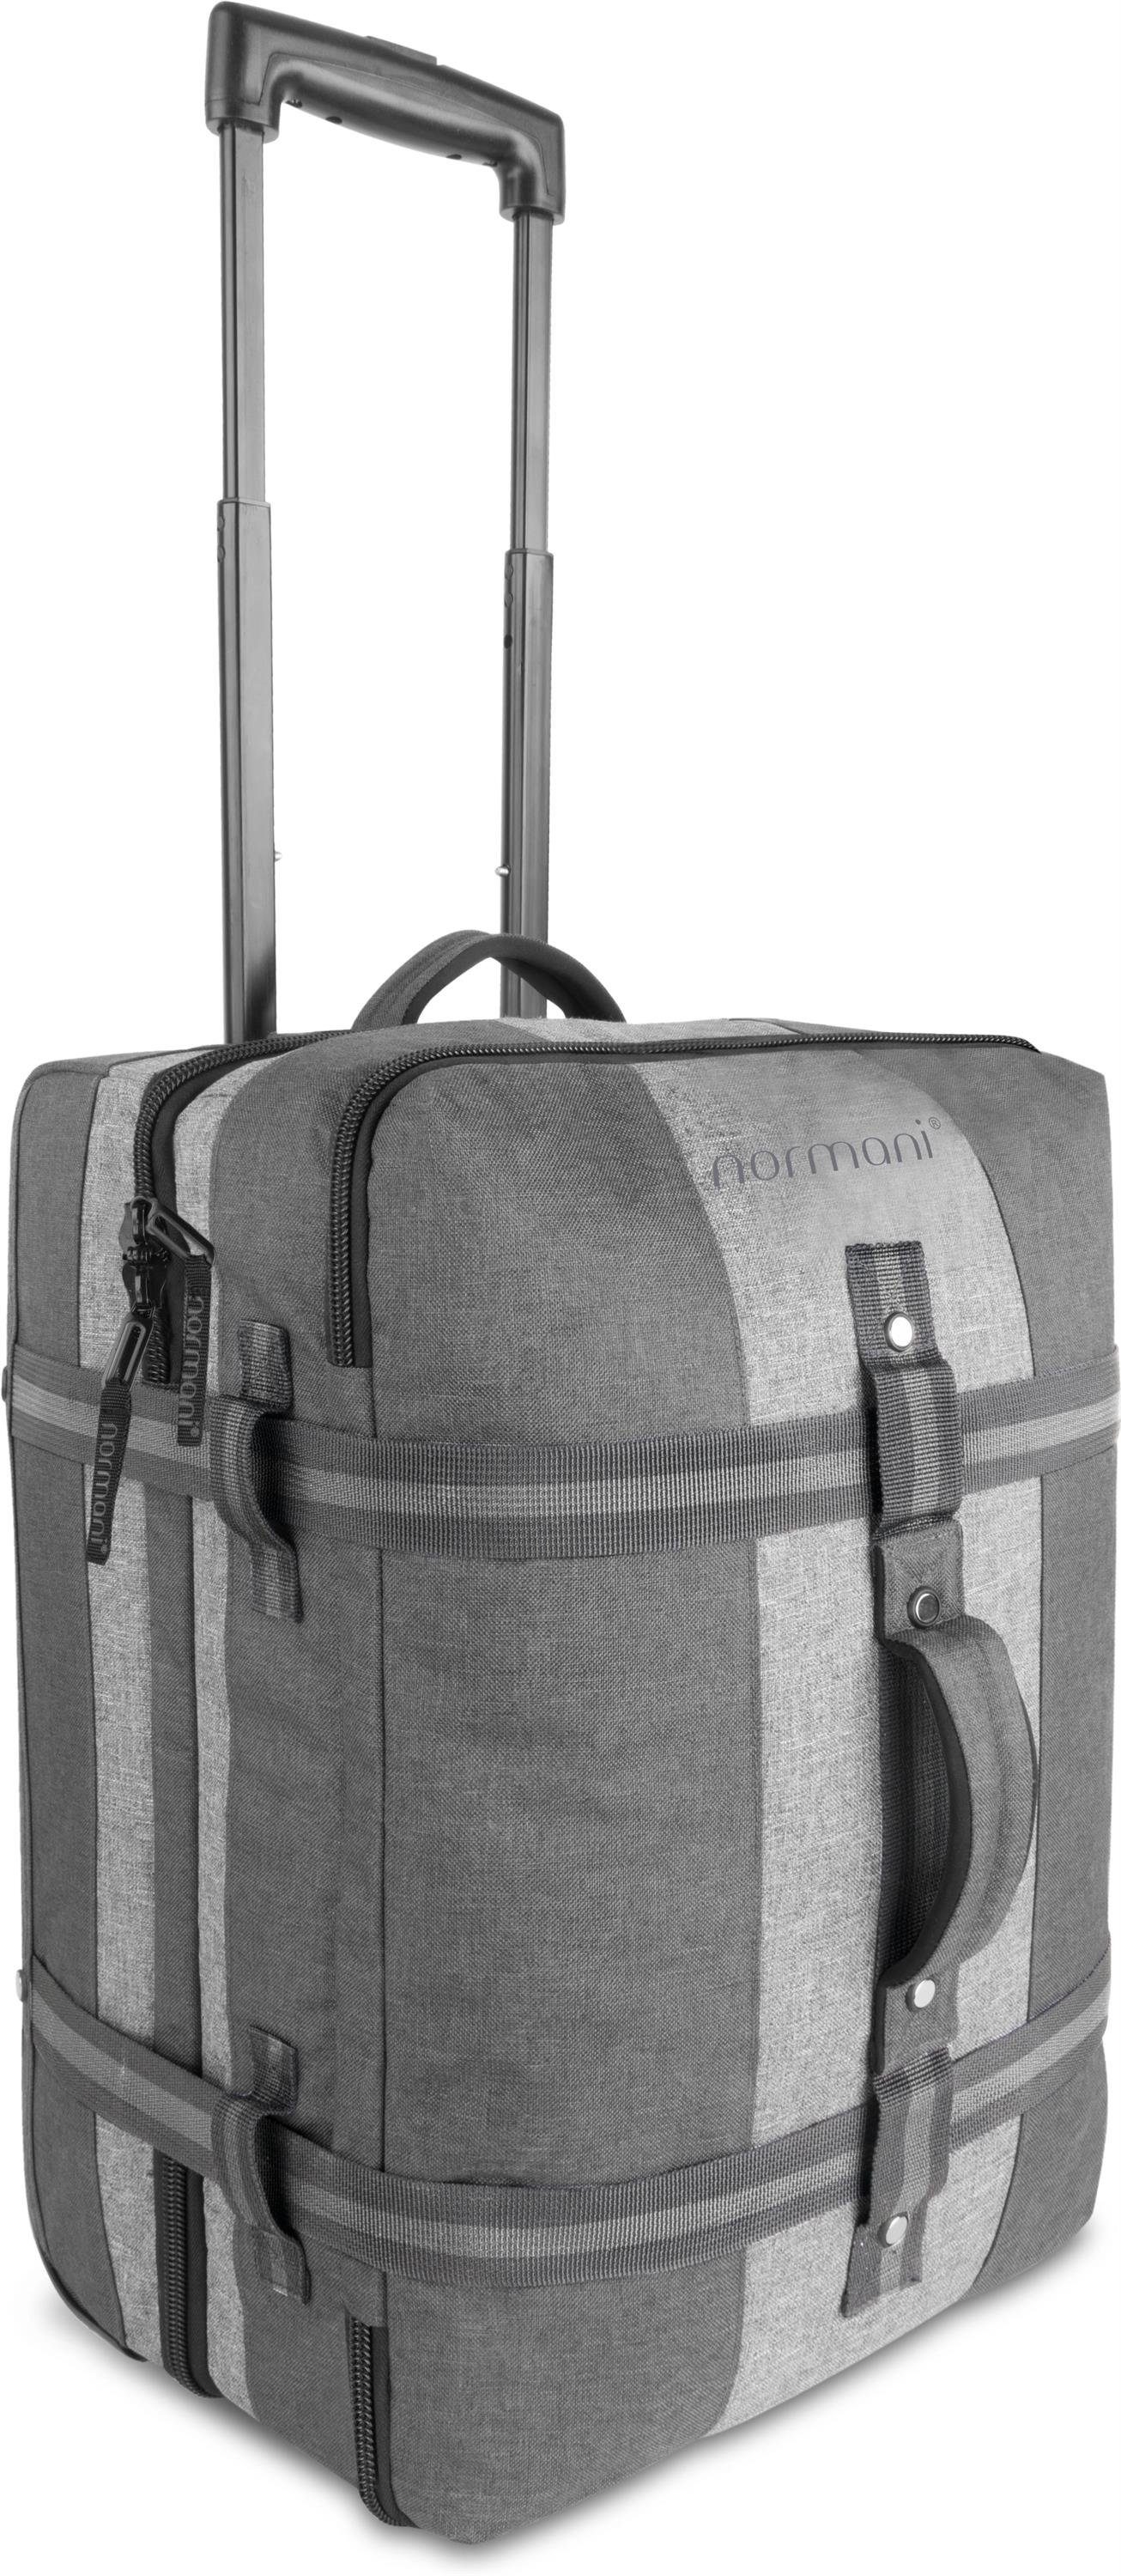 normani Reisetasche Reisetasche mit Handgepäckmaß Aurori 45, Trolley mit clevere Fächeraufteilung Dunkelgrau/Grau